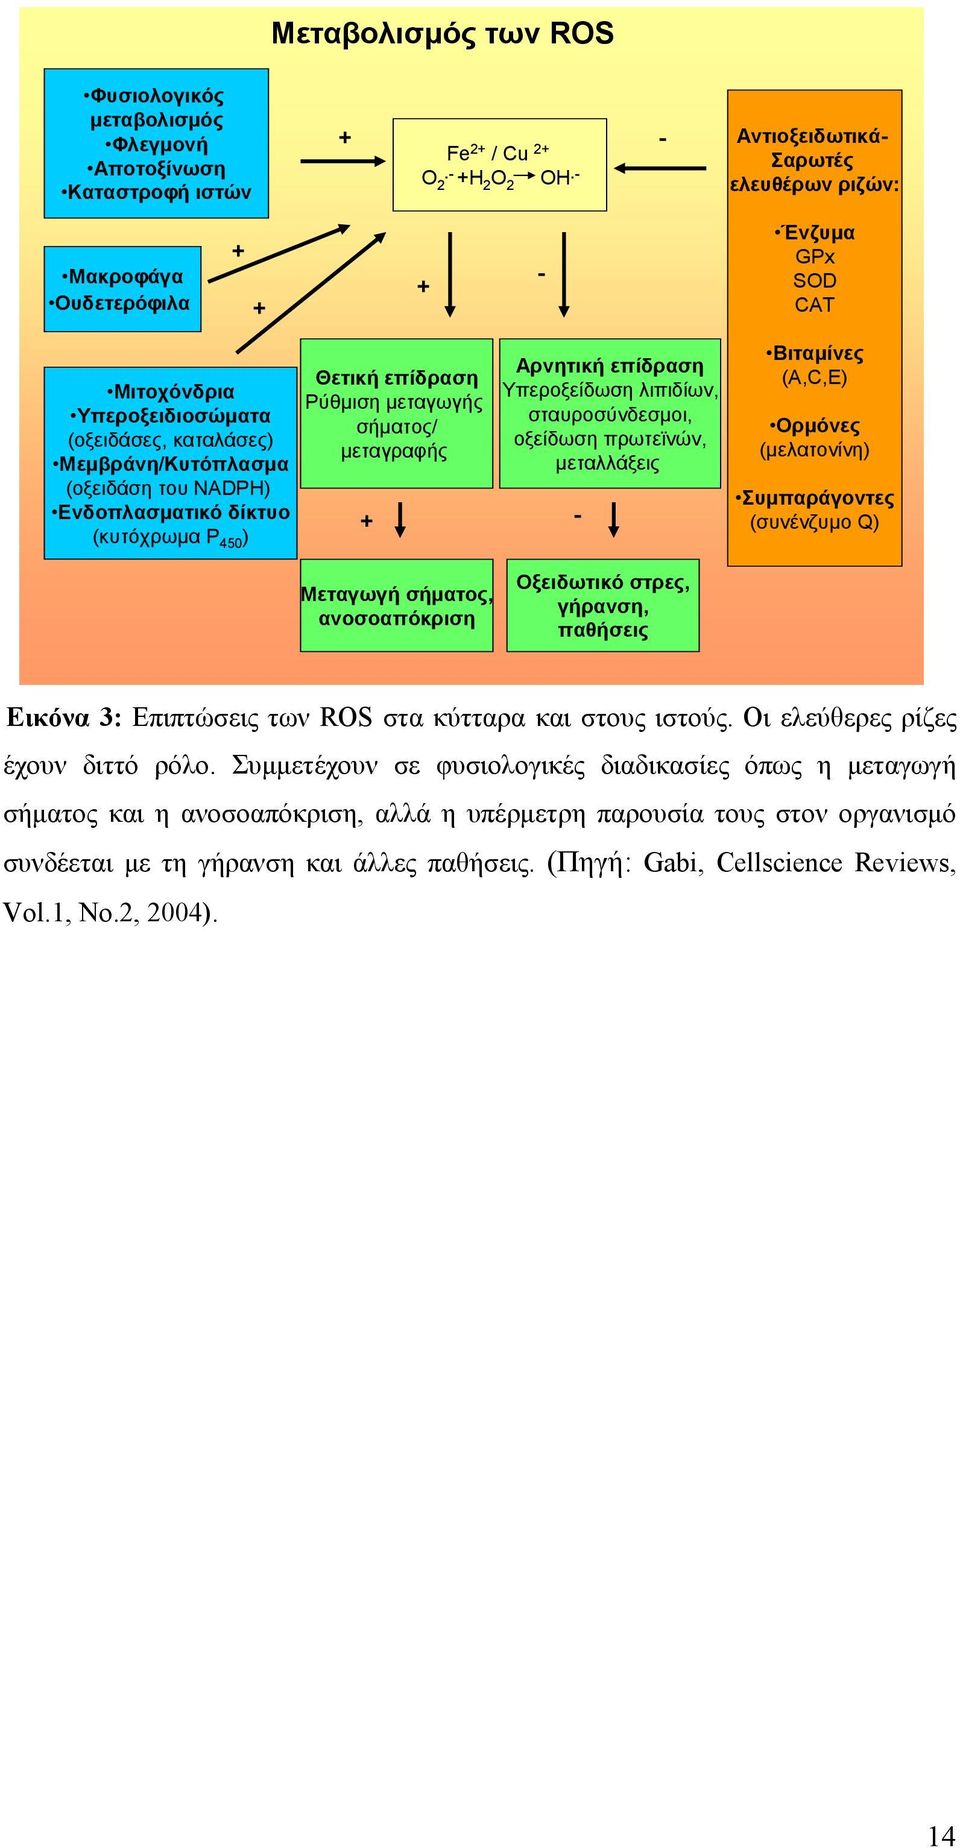 Ενδοπλασματικό δίκτυο (κυτόχρωμα P 450 ) Θετική επίδραση Ρύθμιση μεταγωγής σήματος/ μεταγραφής + Αρνητική επίδραση Υπεροξείδωση λιπιδίων, σταυροσύνδεσμοι, οξείδωση πρωτεϊνών, μεταλλάξεις - Βιταμίνες